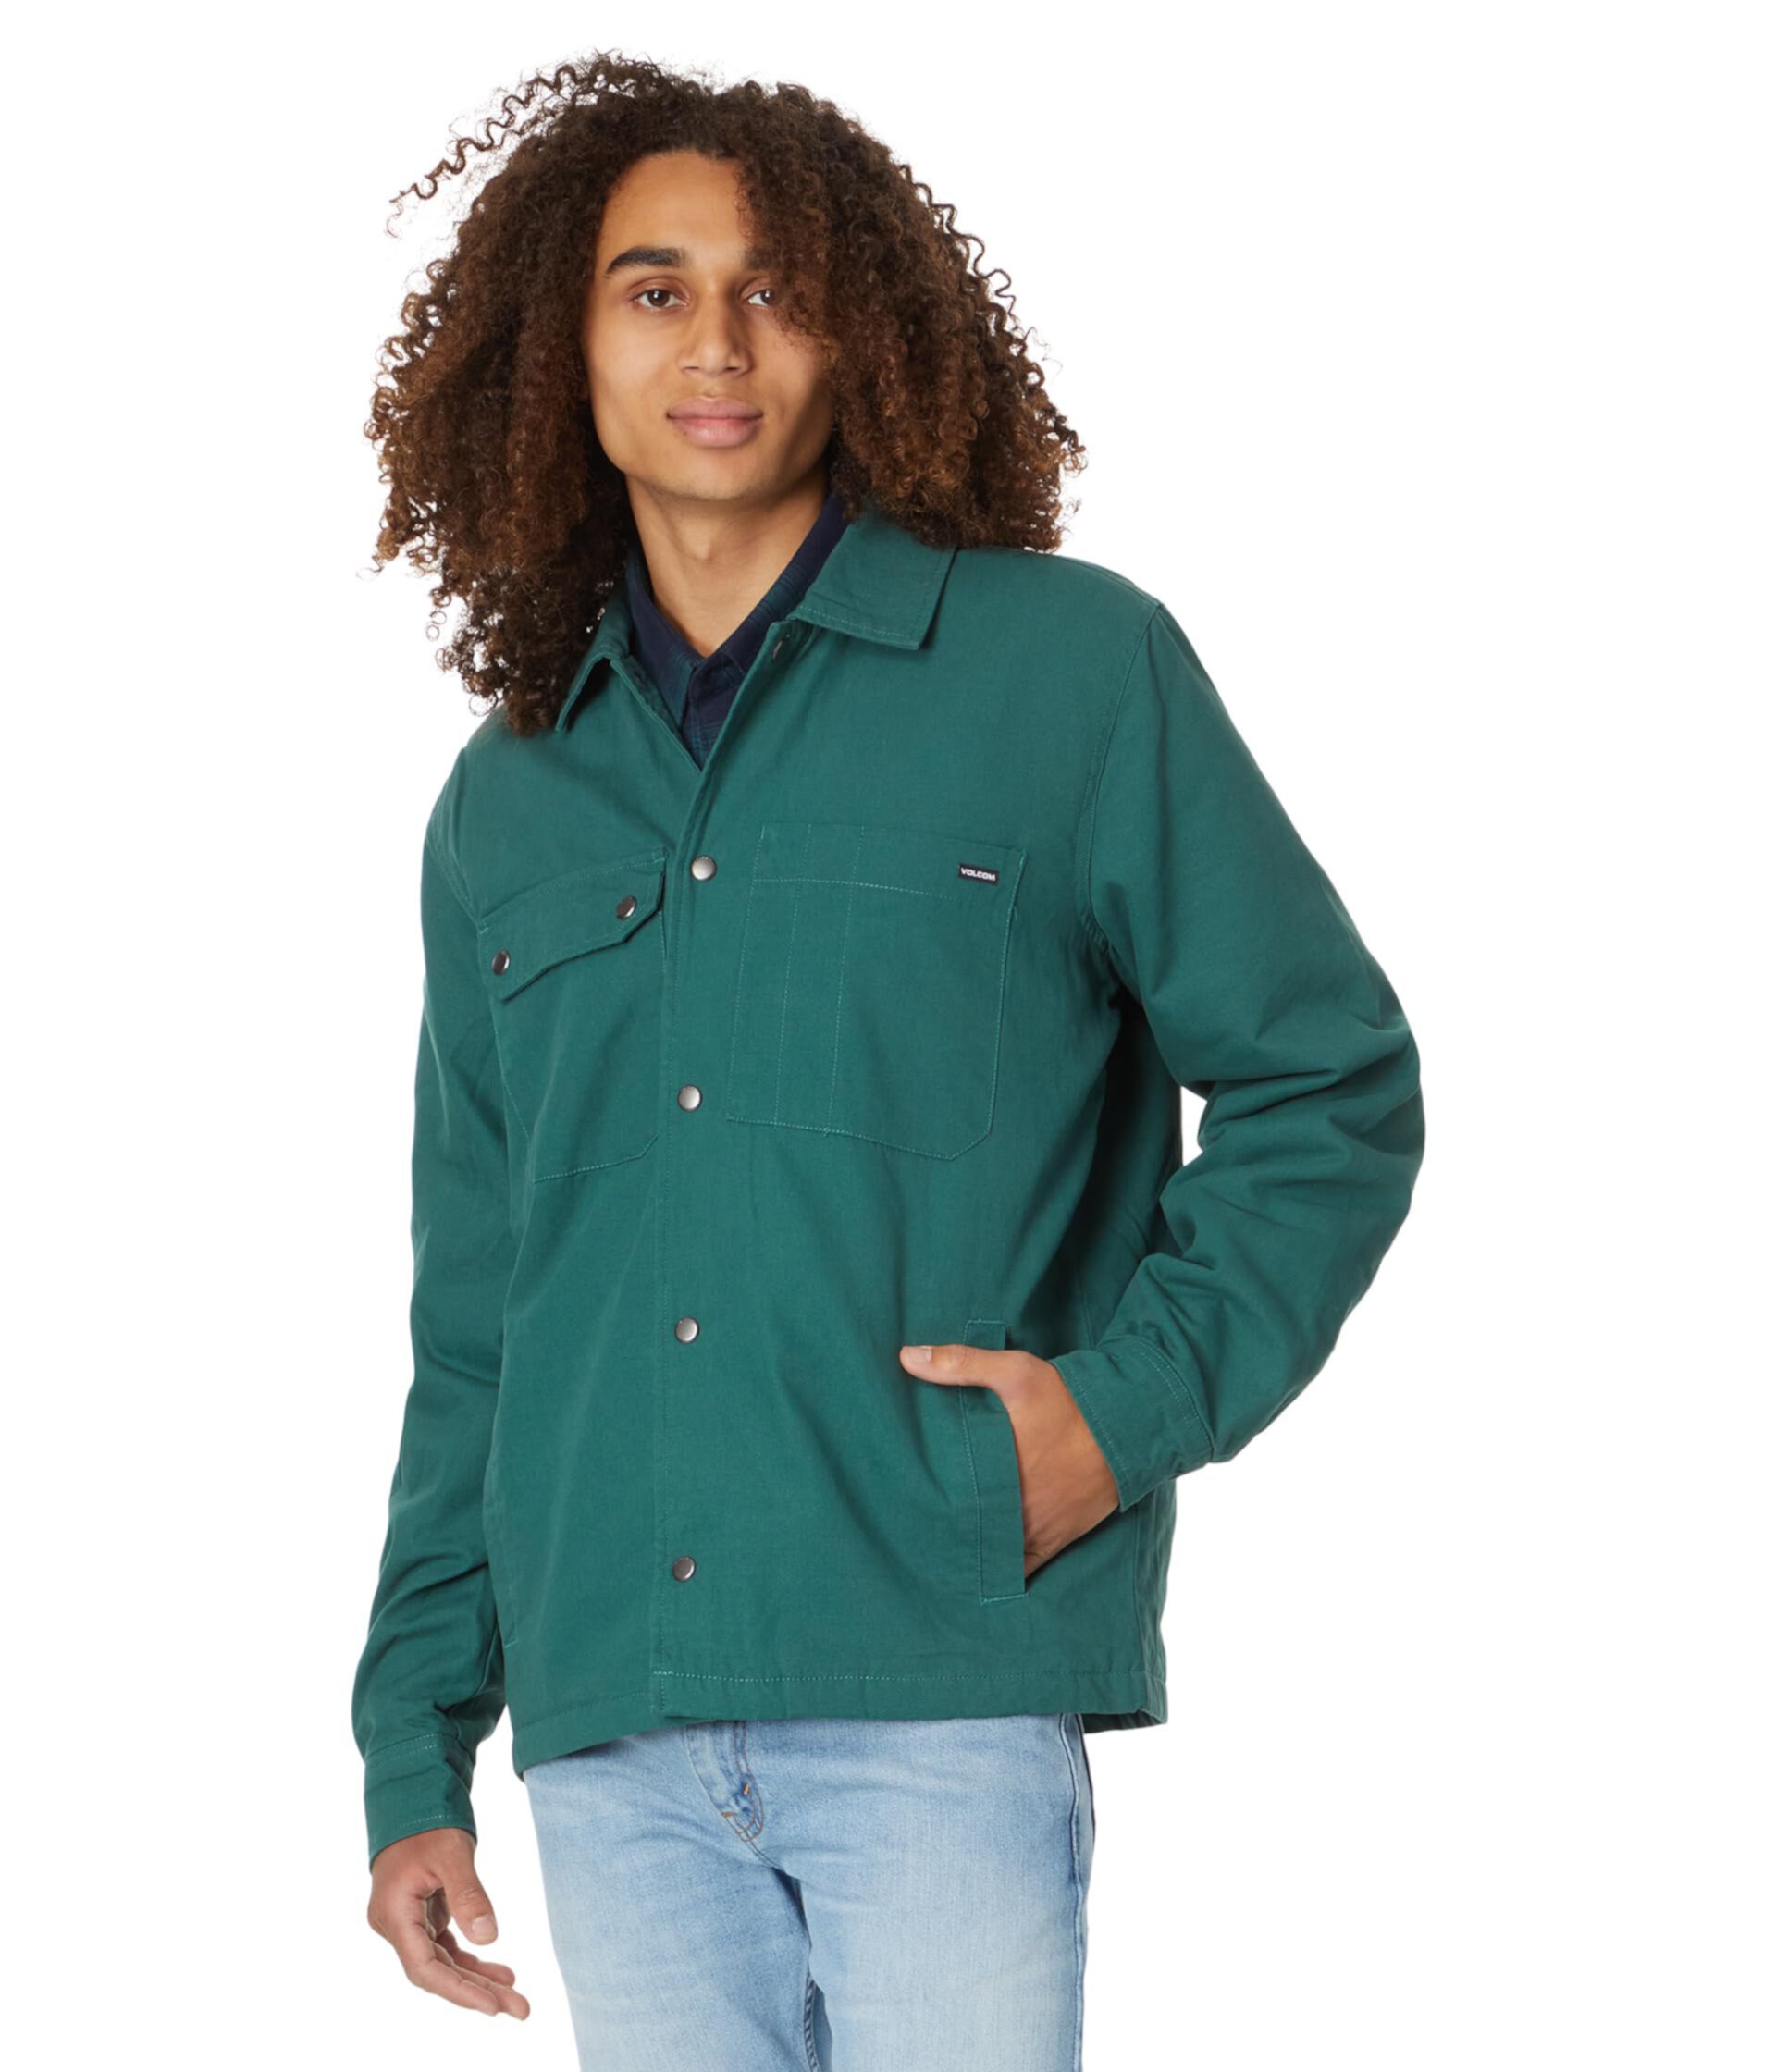 Куртка-рубашка Larkin Volcom